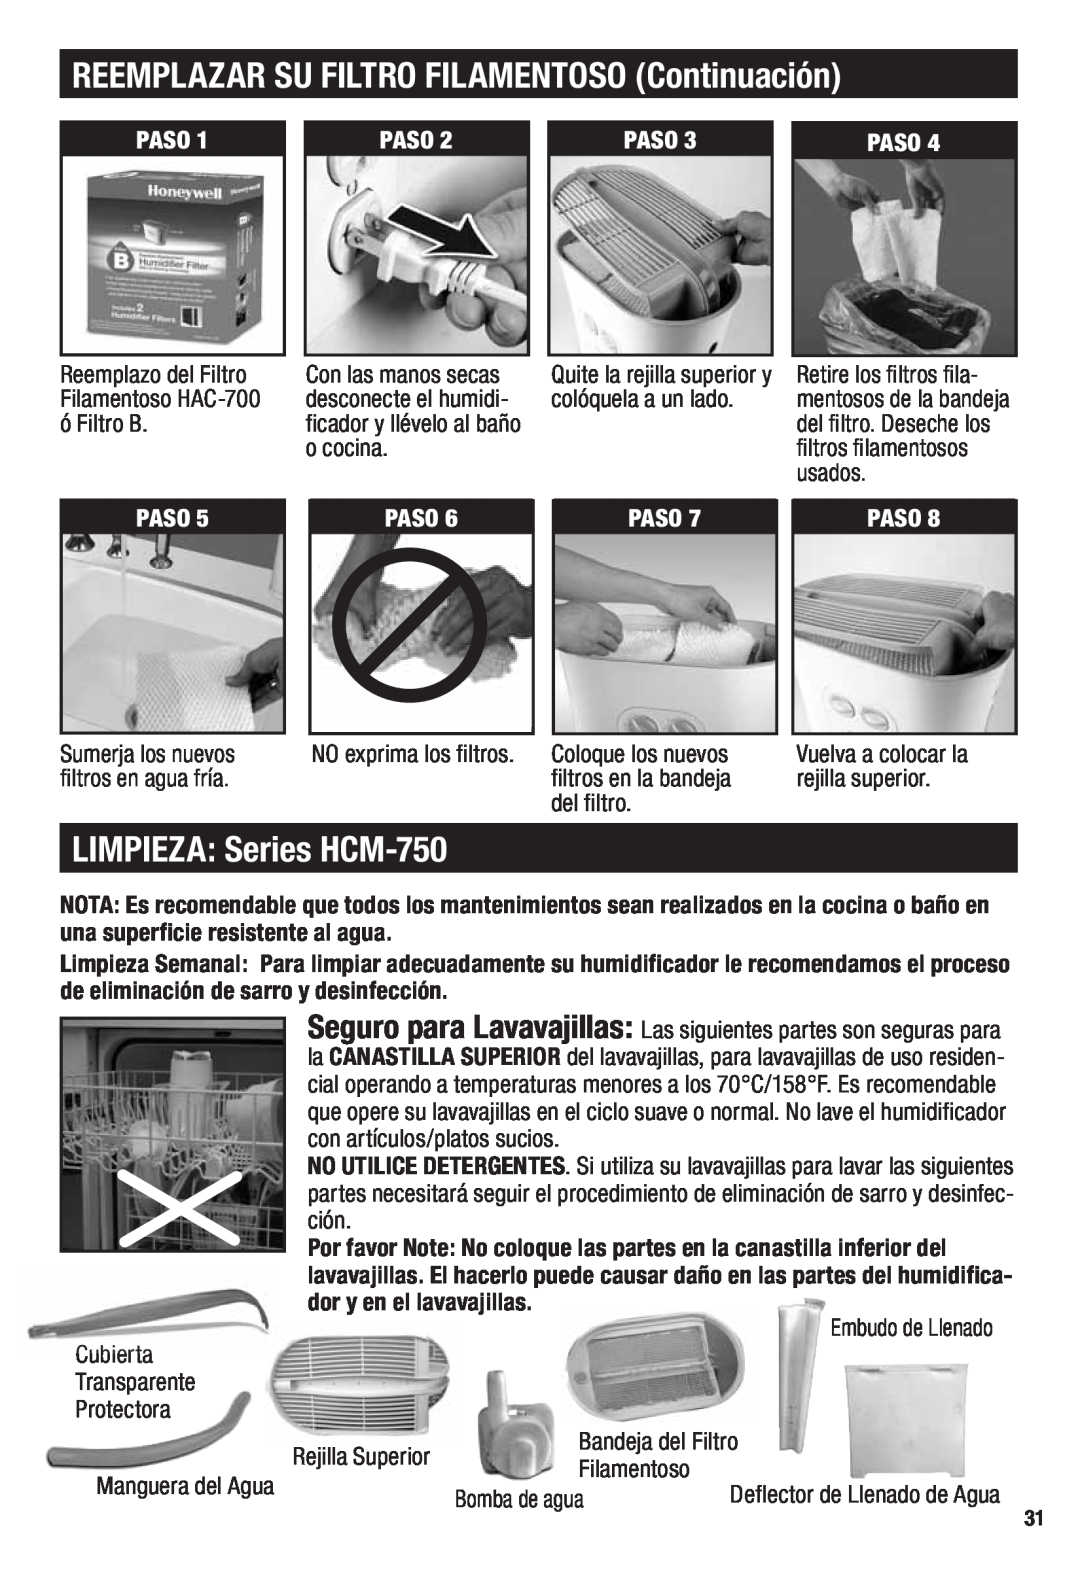 Honeywell important safety instructions REEMPLAZAR SU FILTRO FILAMENTOSO Continuación, LIMPIEZA Series HCM-750, Paso 